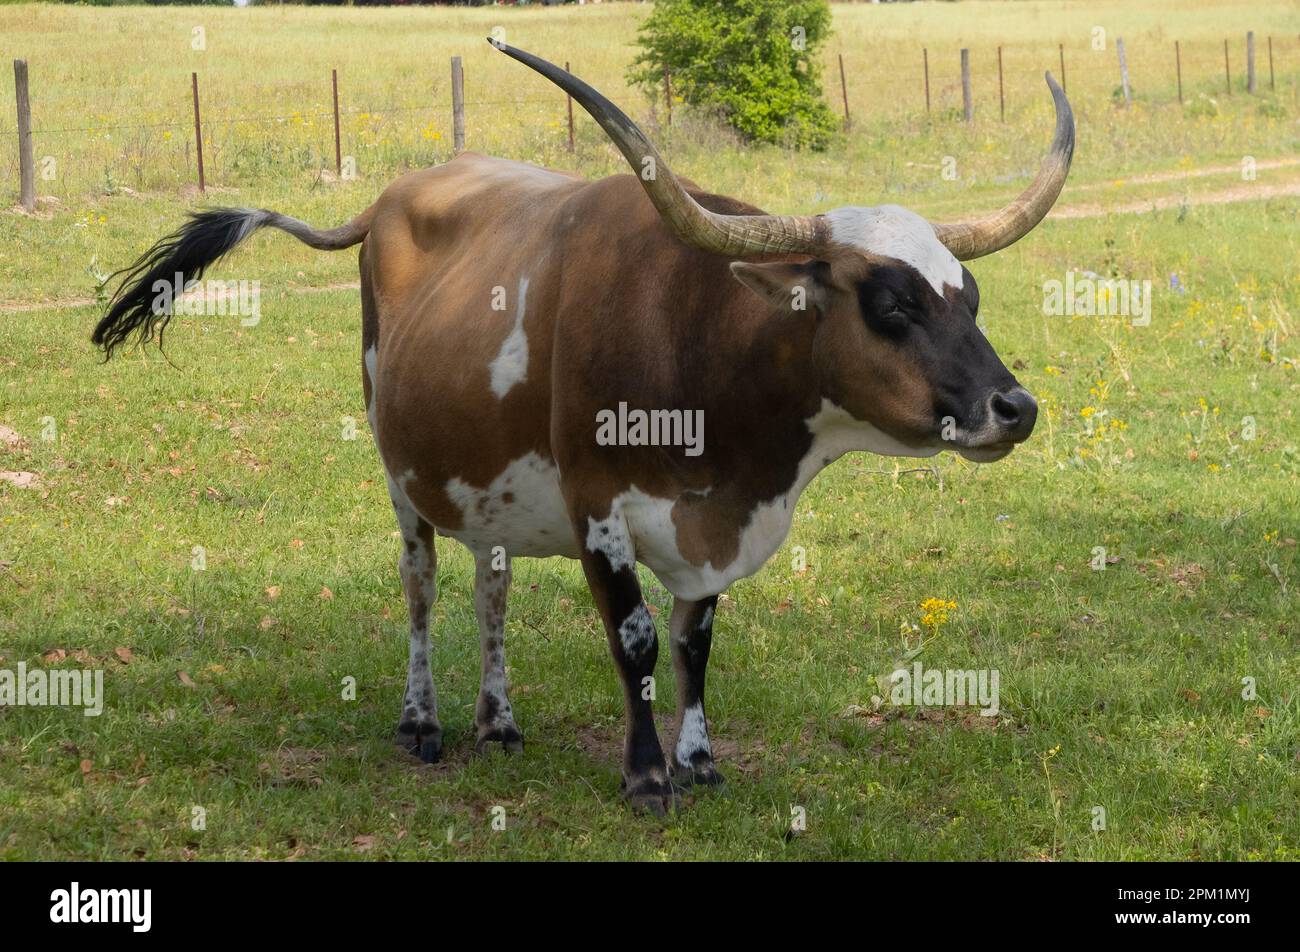 Une vache texas longhorn brune, blanche et noire avec queue de crépuscule debout dans un pâturage vert faisant face à la caméra. Banque D'Images